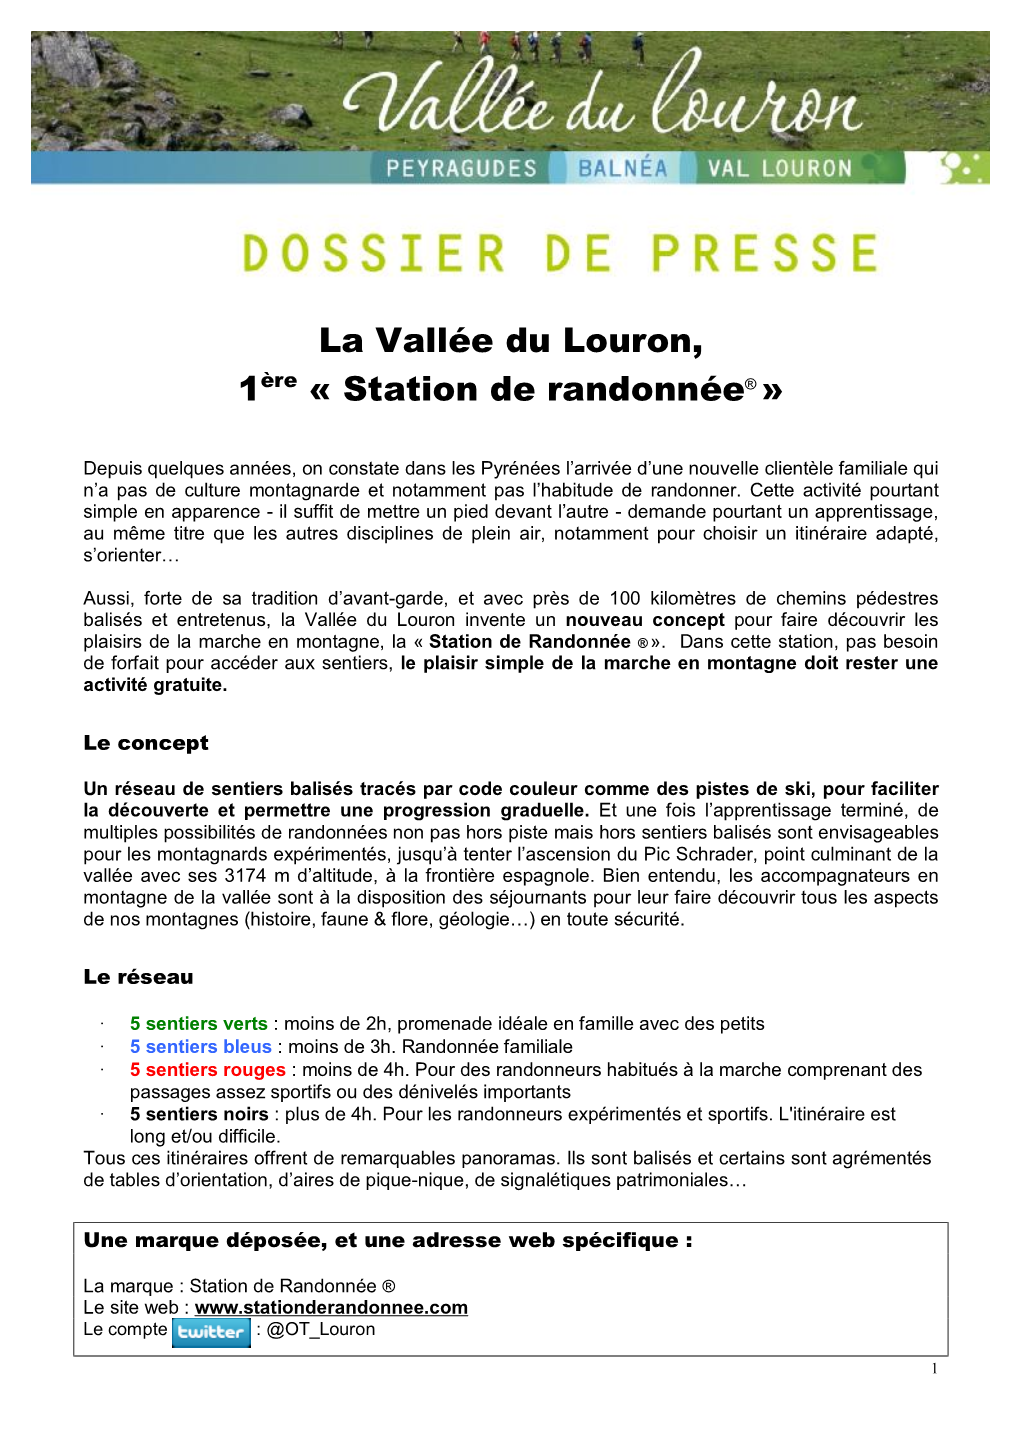 Dossier De Presse Station De Randonnee.Docx